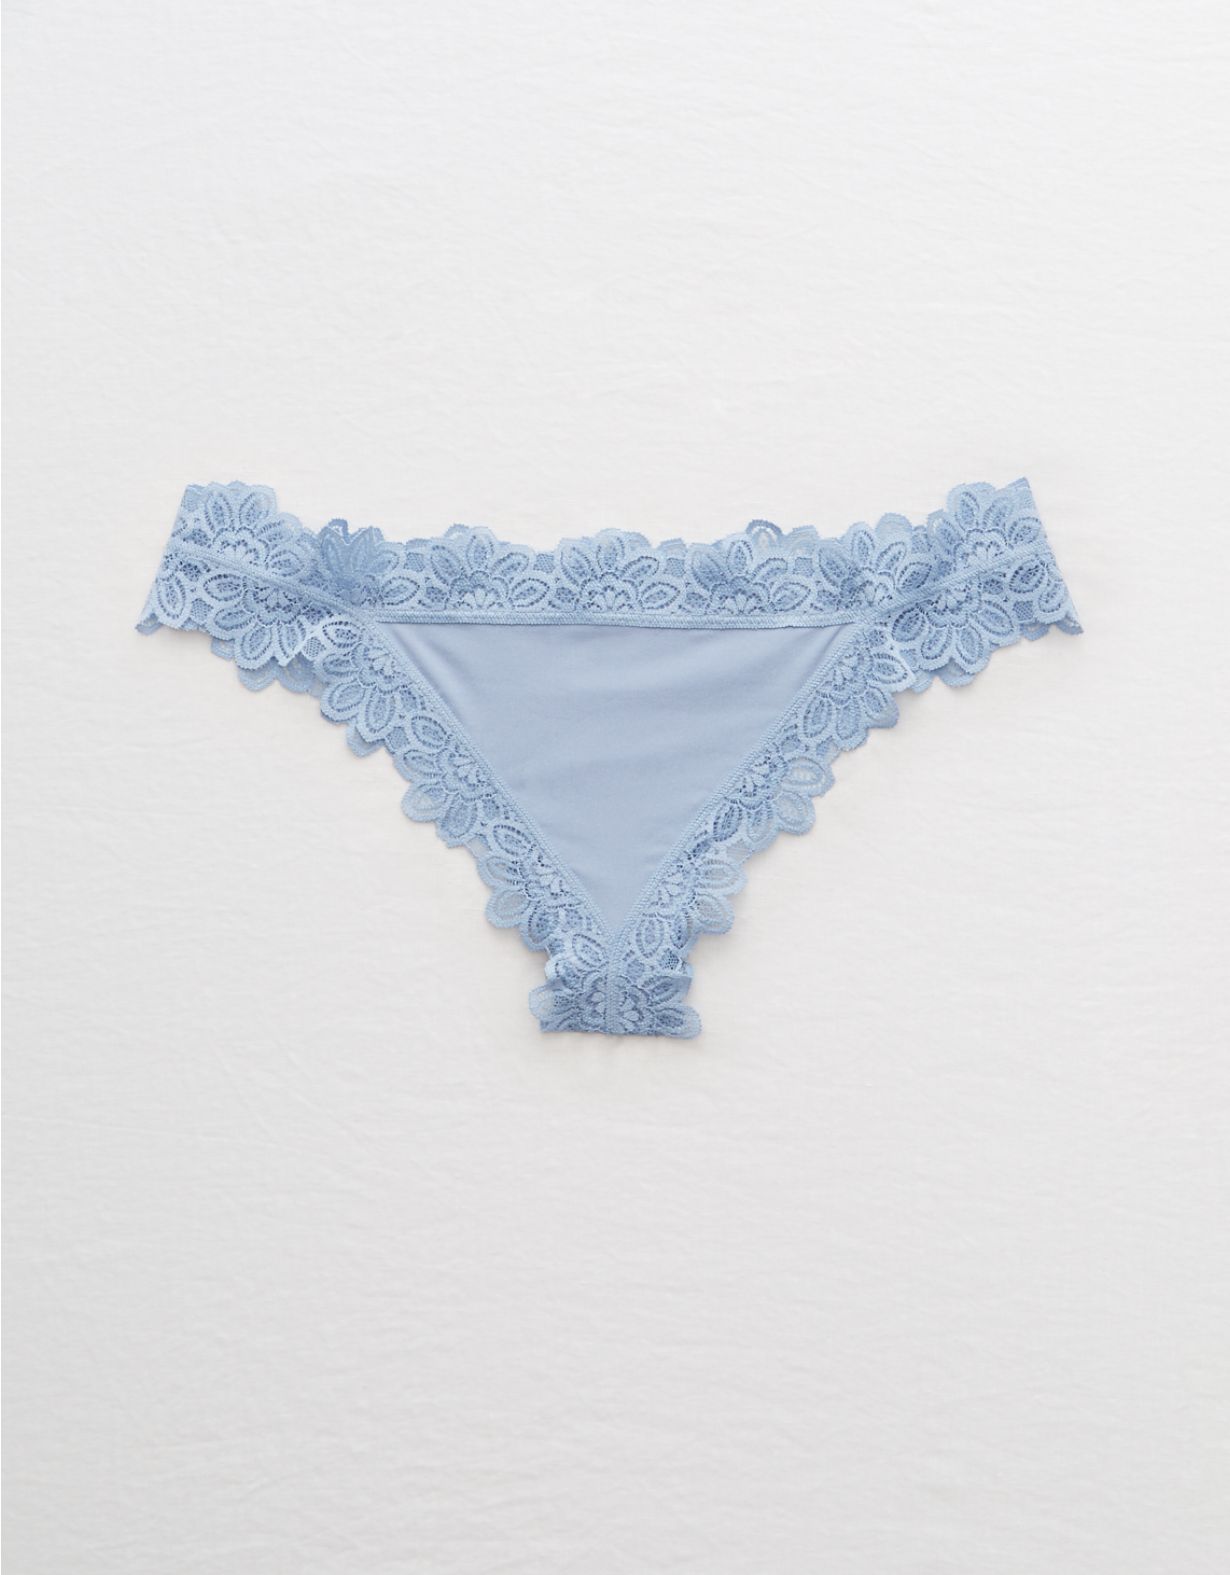 Aerie Lace Trim Shine Thong Underwear